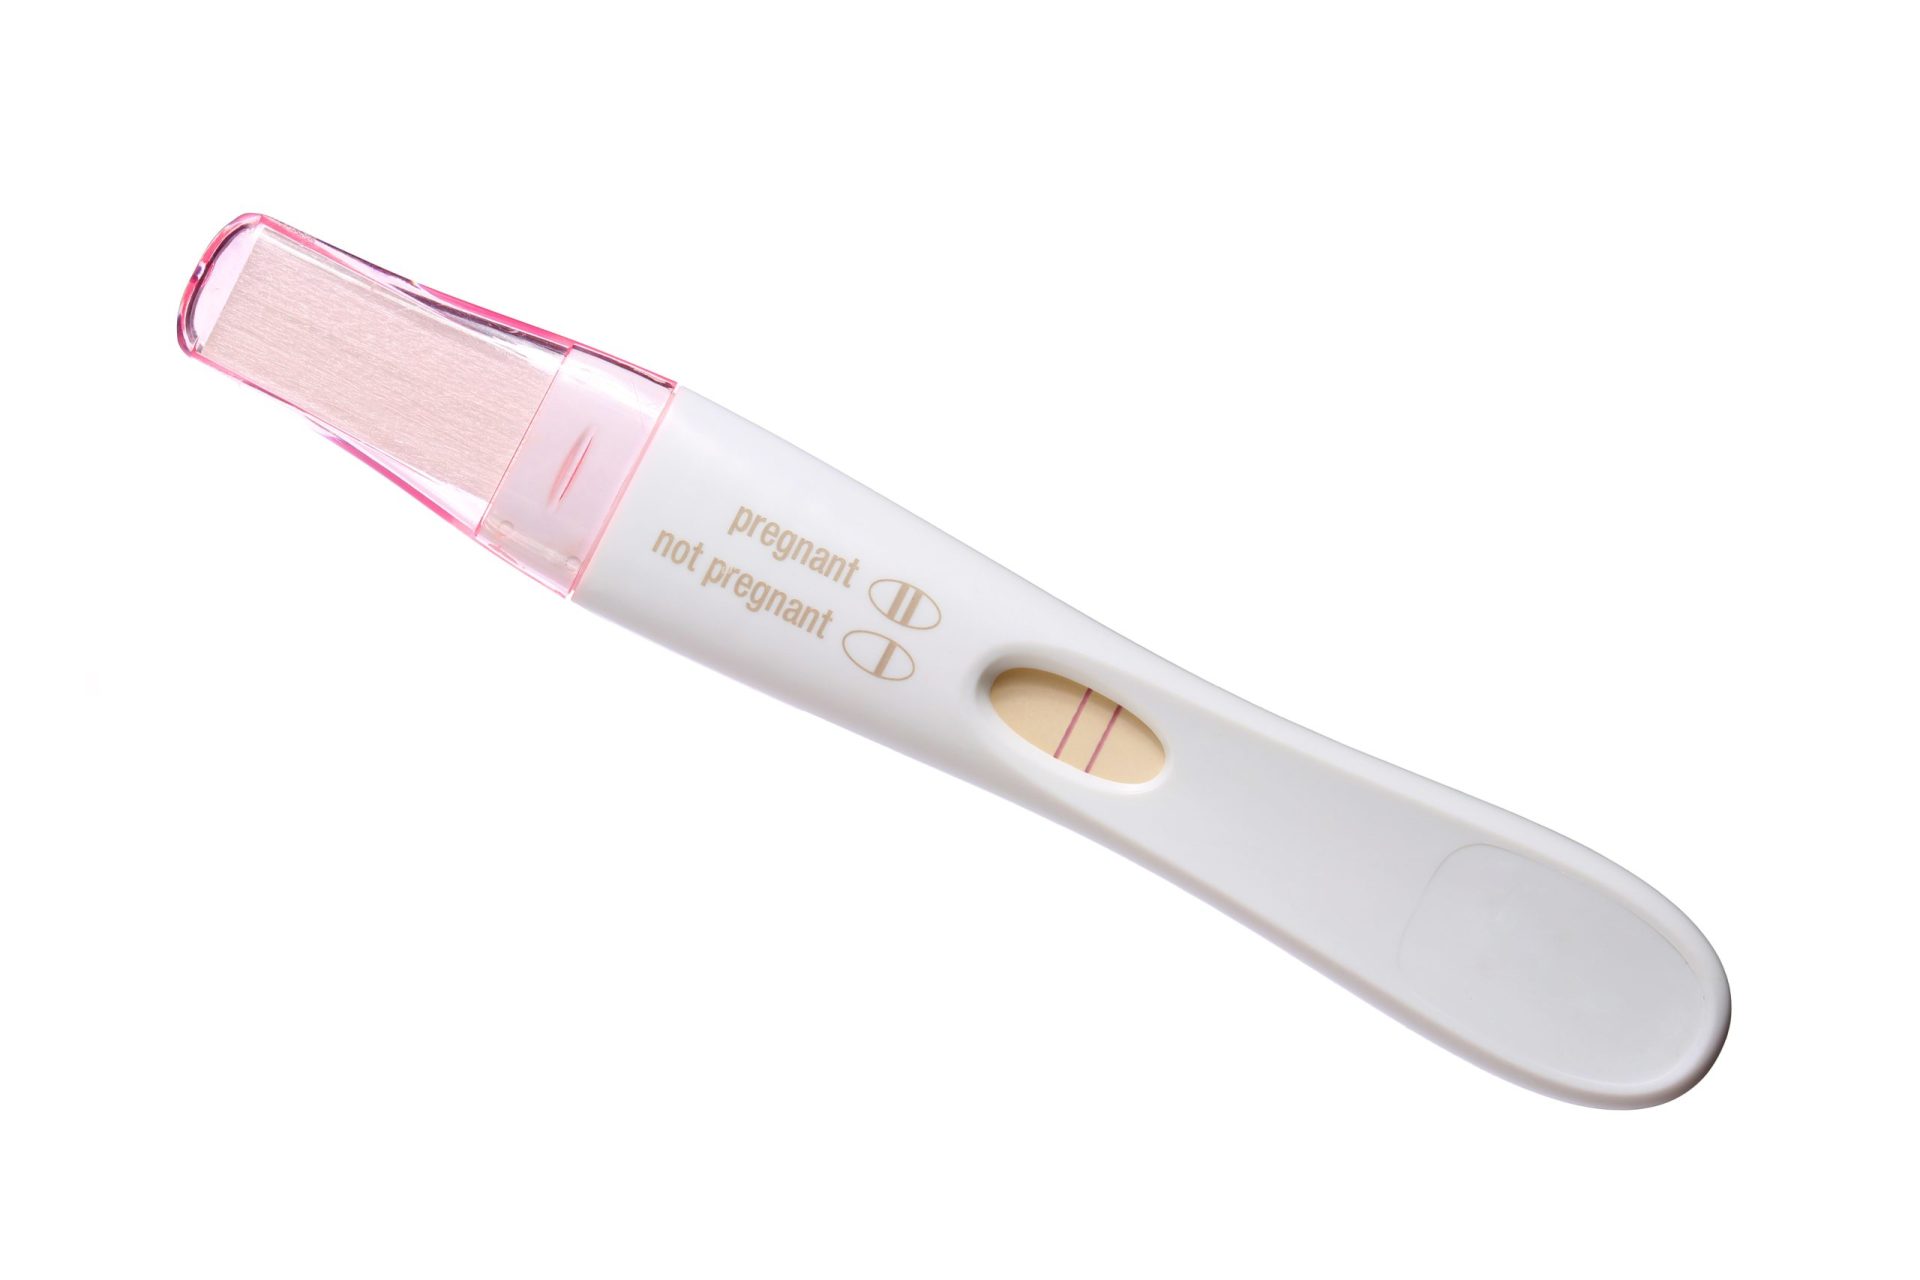 Mulheres vendem testes de gravidez positivos na internet para ‘agarrarem’ namorados